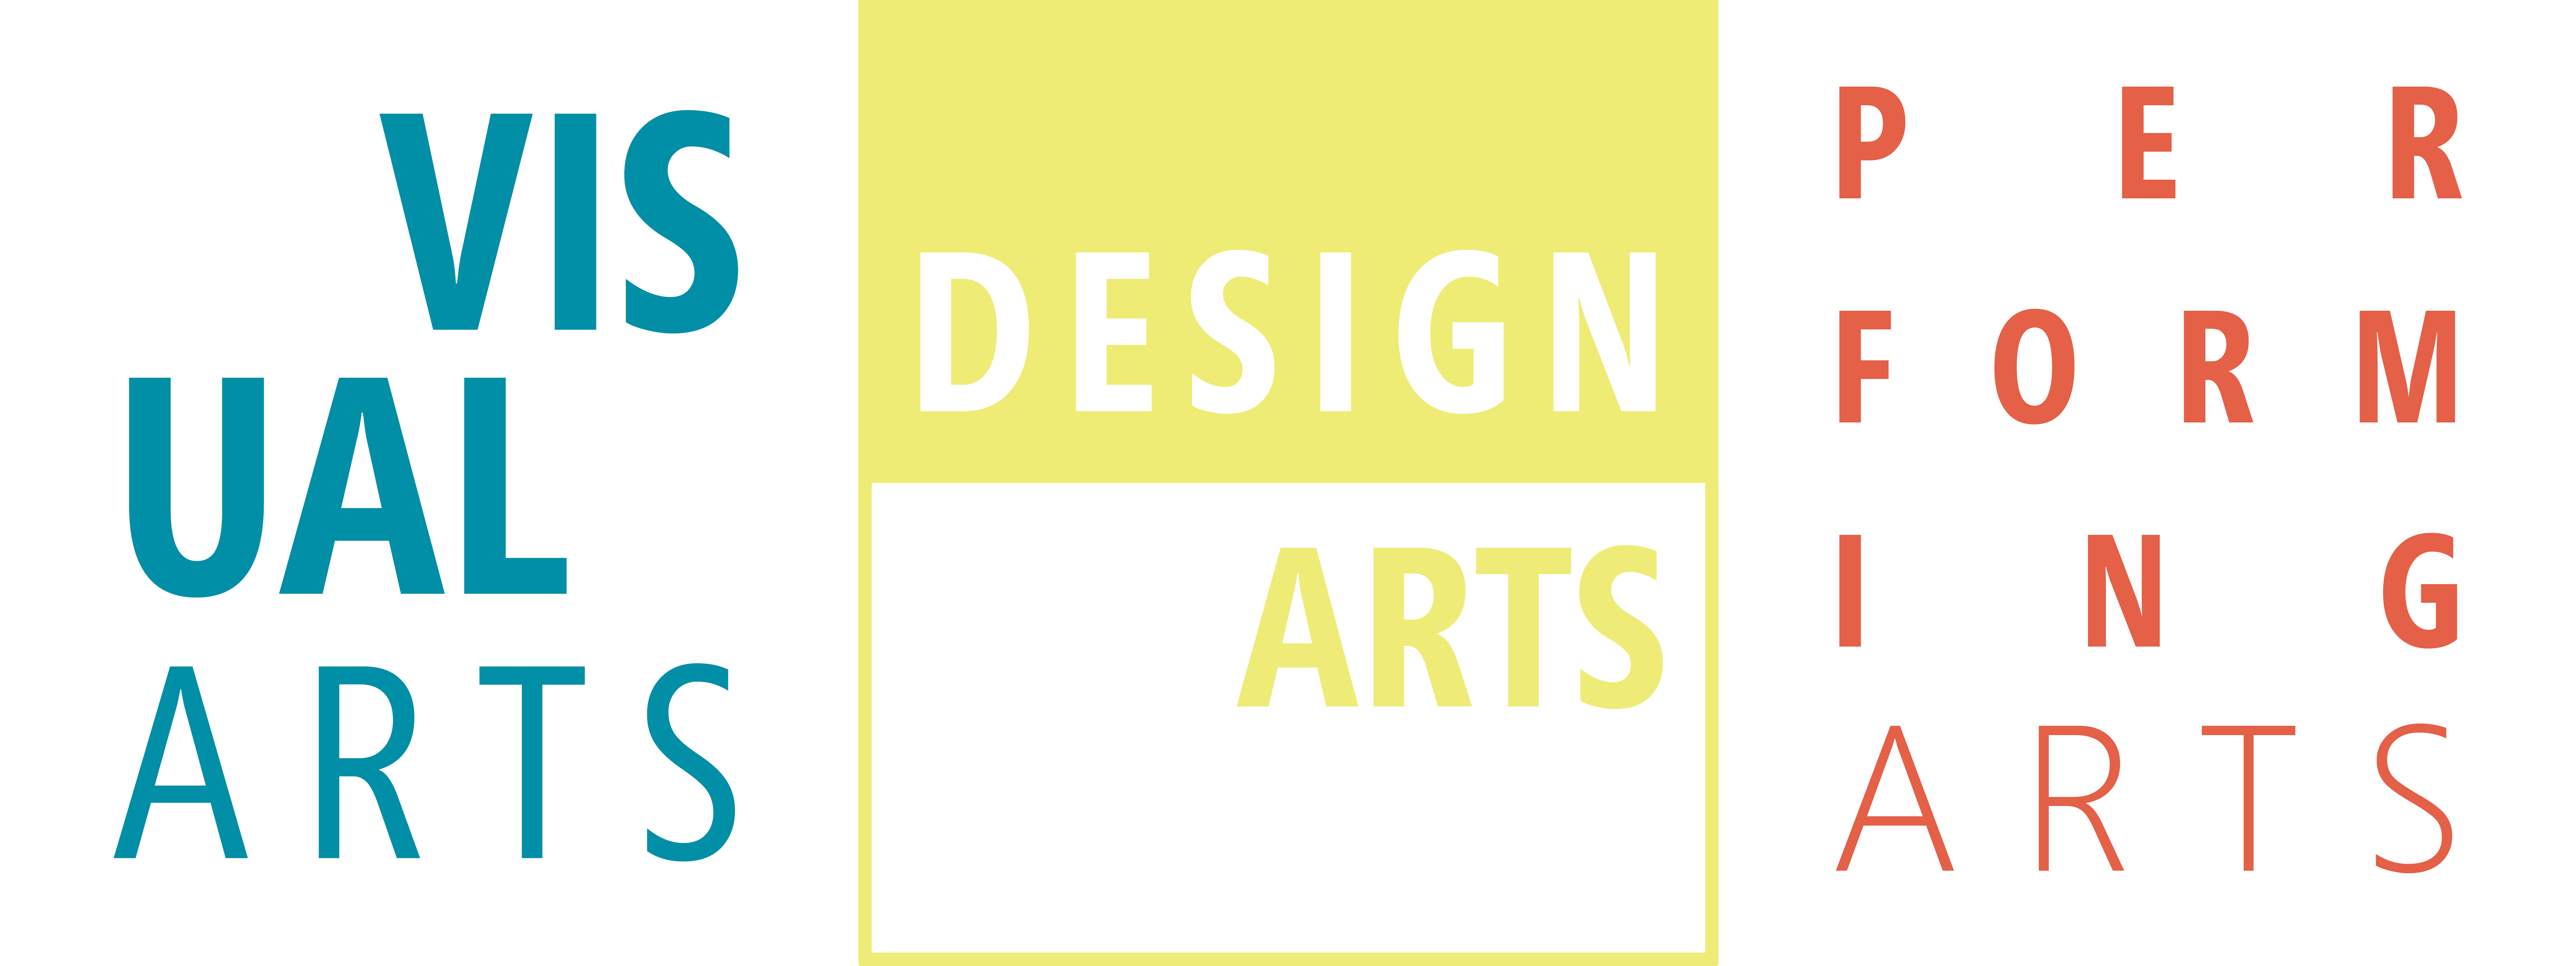 Visual Arts | Design Arts | Performing Arts